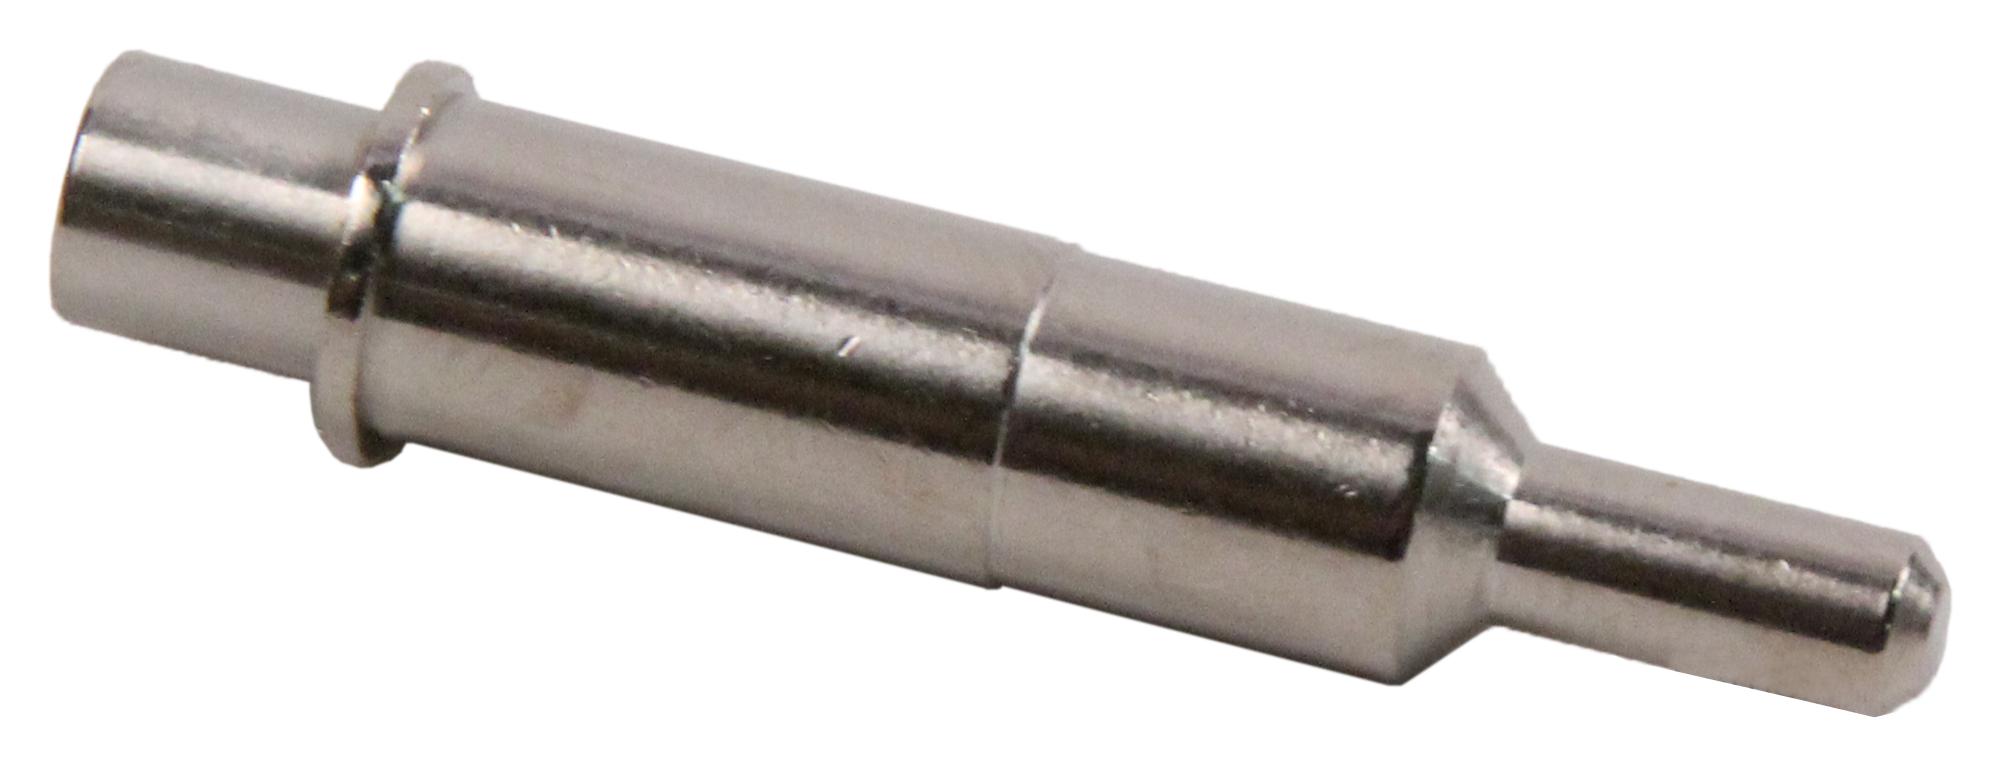 Amphenol Industrial 21-033899-8Q1 Sealing Plug, Size 8, Metal